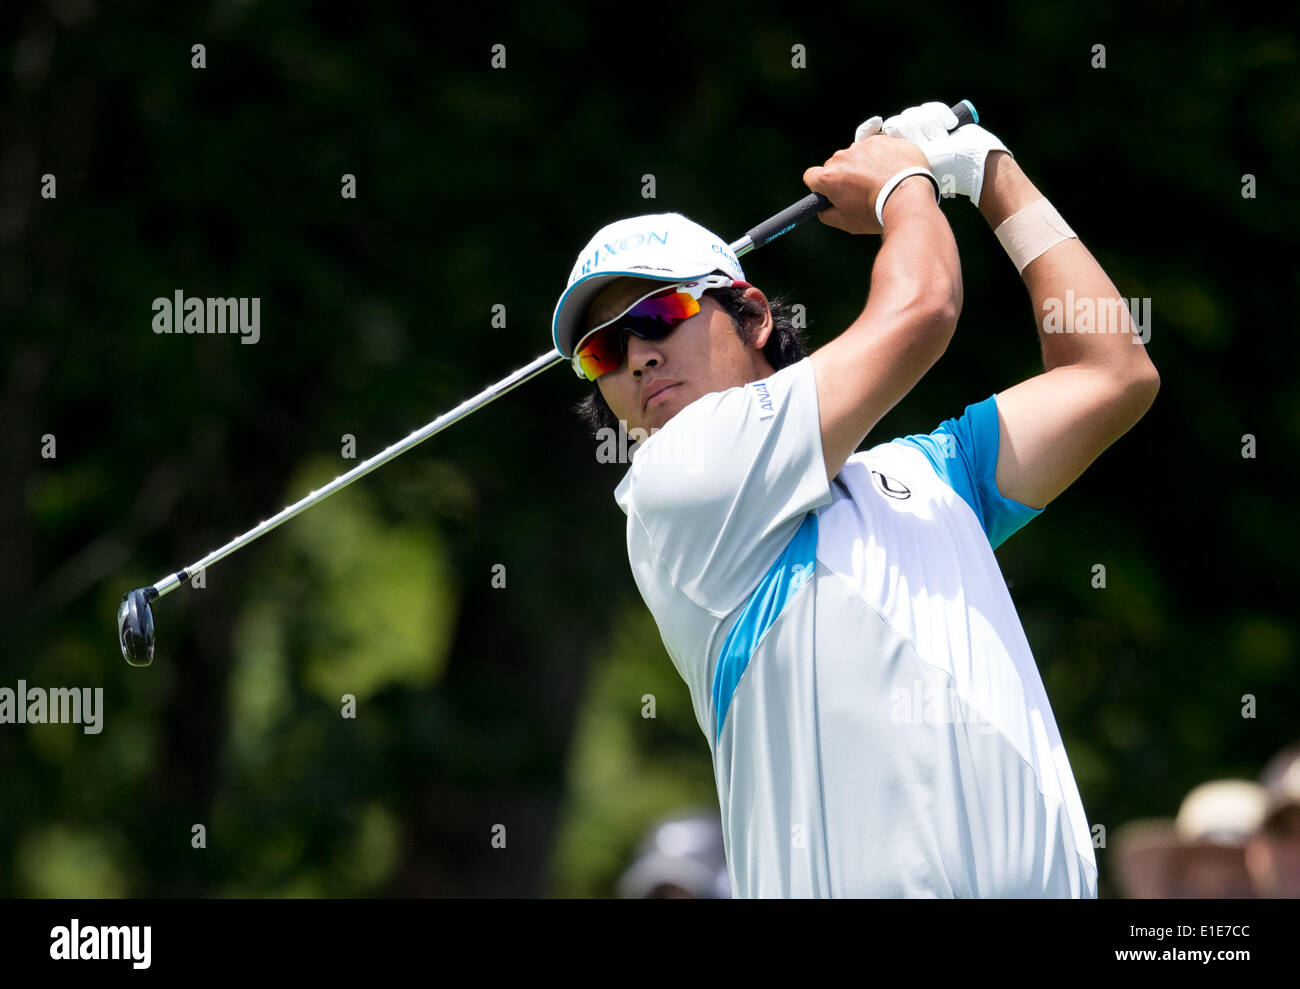 (140602) -- DUBLÍN, 2 de junio de 2014 (Xinhua) -- Hideki Matsuyama del Japón aterriza durante la ronda final del Torneo Memorial en Muirfield Village Golf Club en Dublín, los Estados Unidos, el 1 de junio de 2014. Matsuyama ganó en play off sobre Kevin na de los Estados Unidos y afirmó que el campeón. (Xinhua/Shen Ting) Foto de stock